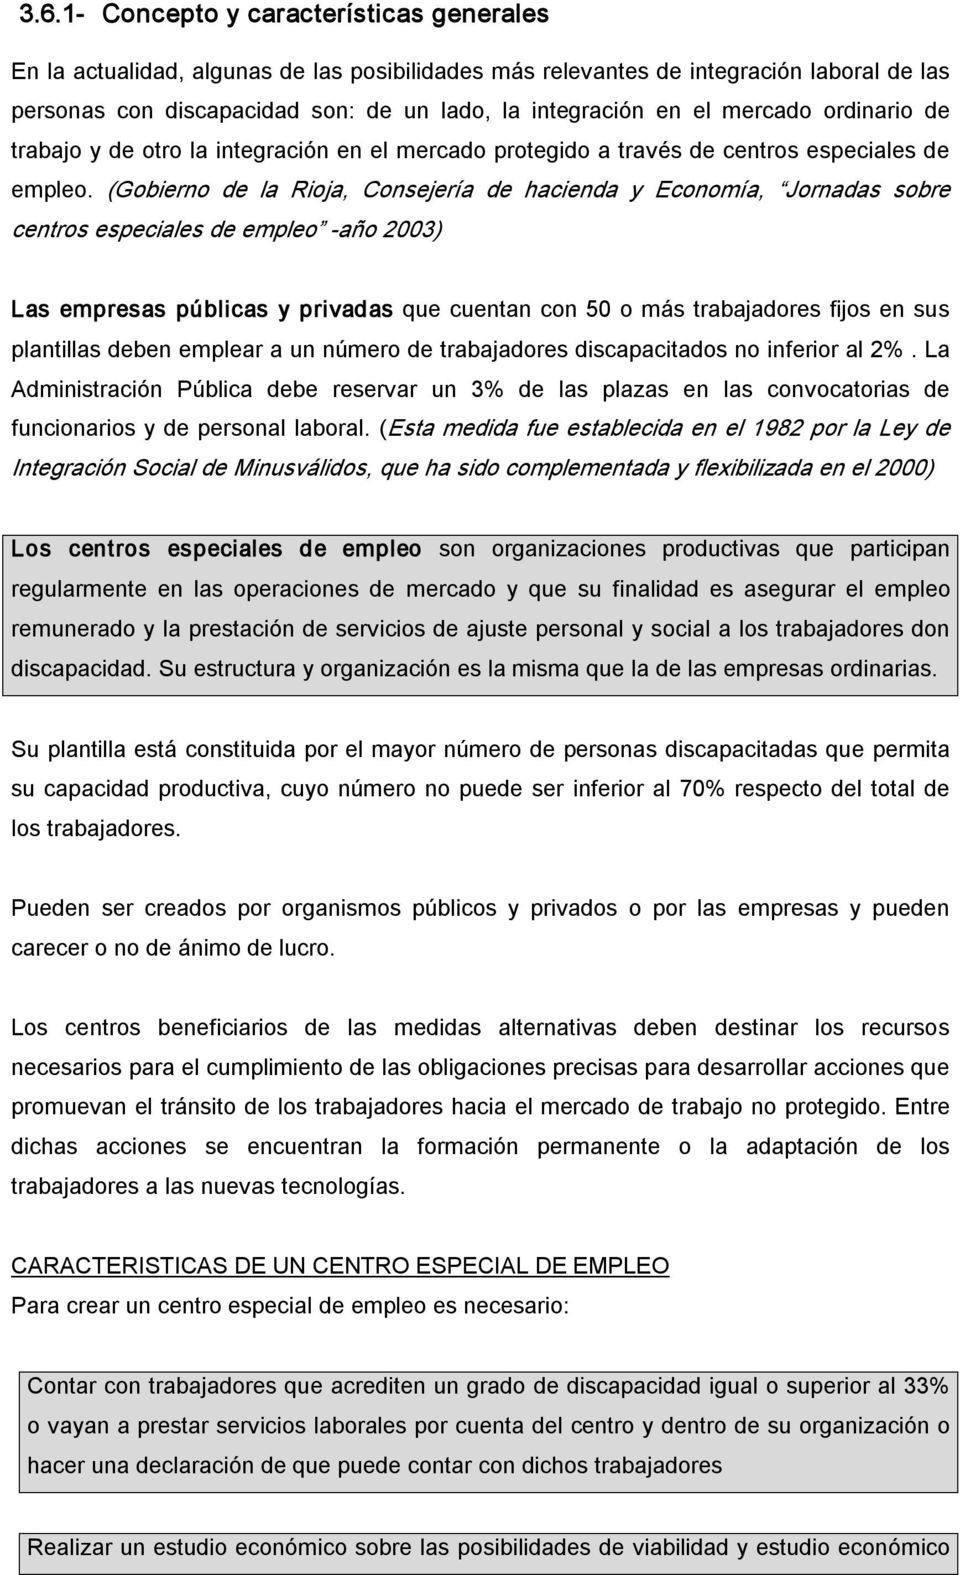 (Gobierno de la Rioja, Consejería de hacienda y Economía, Jornadas sobre centros especiales de empleo año 2003) Las empresas públicas y privadas que cuentan con 50 o más trabajadores fijos en sus